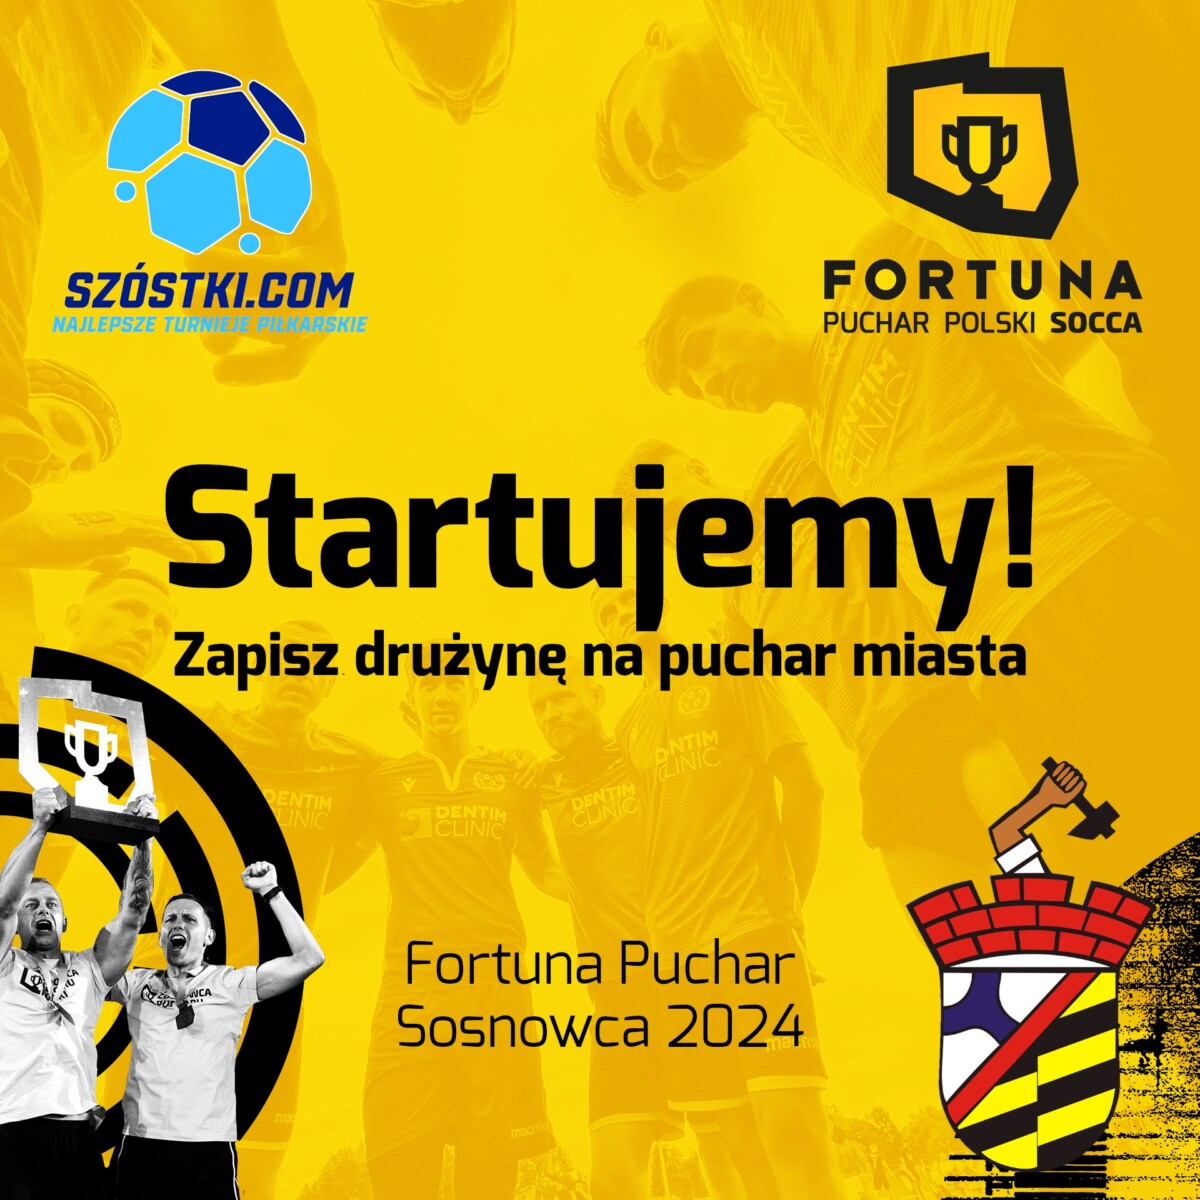 Zapisz swoją drużynę na FORTUNA Puchar Sosnowca 2024!